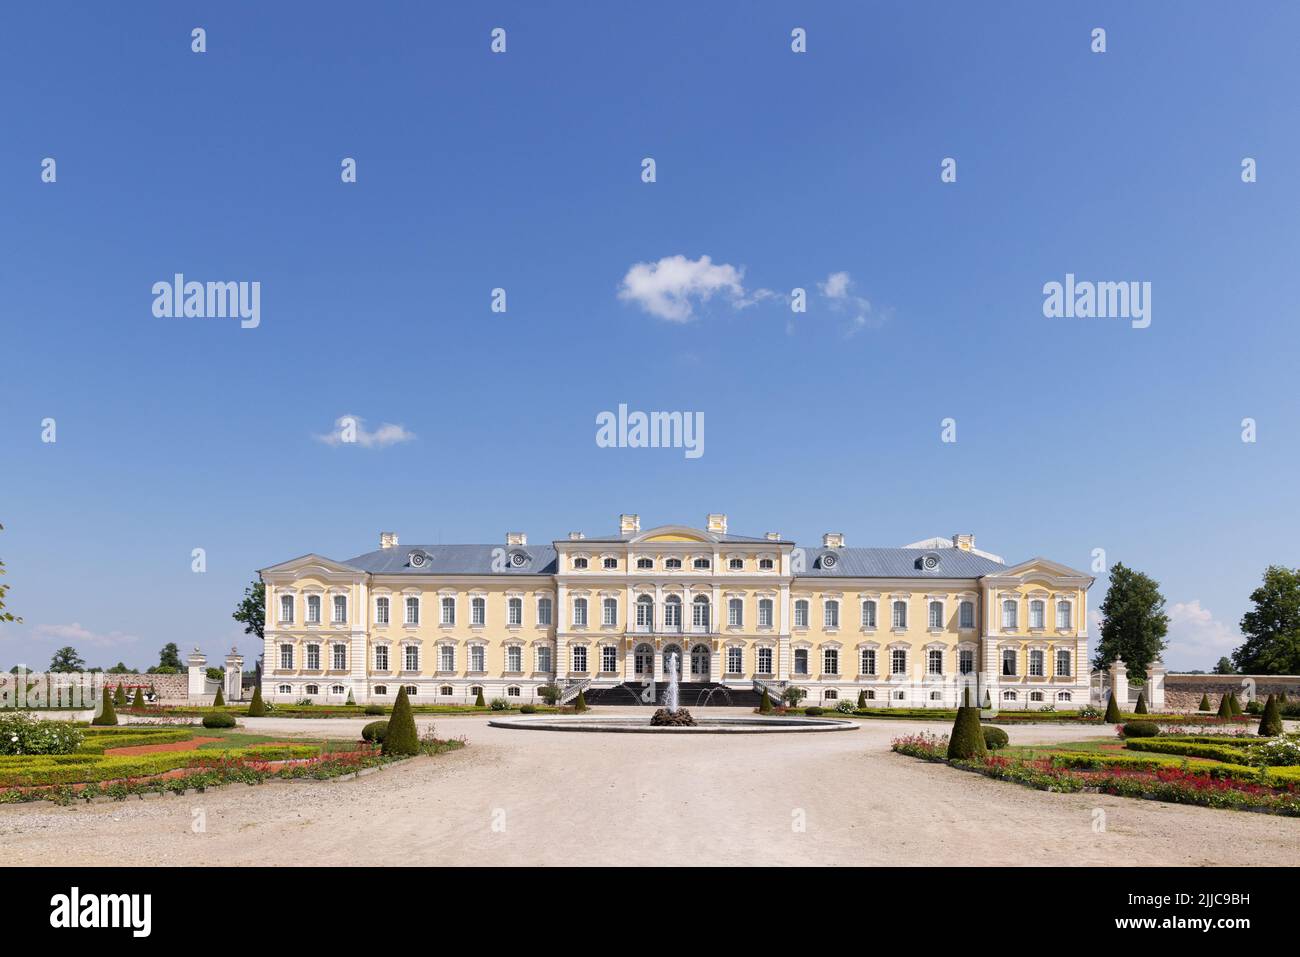 Rundale Palace, Lettland; ein barocker Palast aus dem 18.. Jahrhundert, der 1700s von Ernst Johann von Biron erbaut wurde und heute Museum und Garten ist, Lettland, Europa Stockfoto